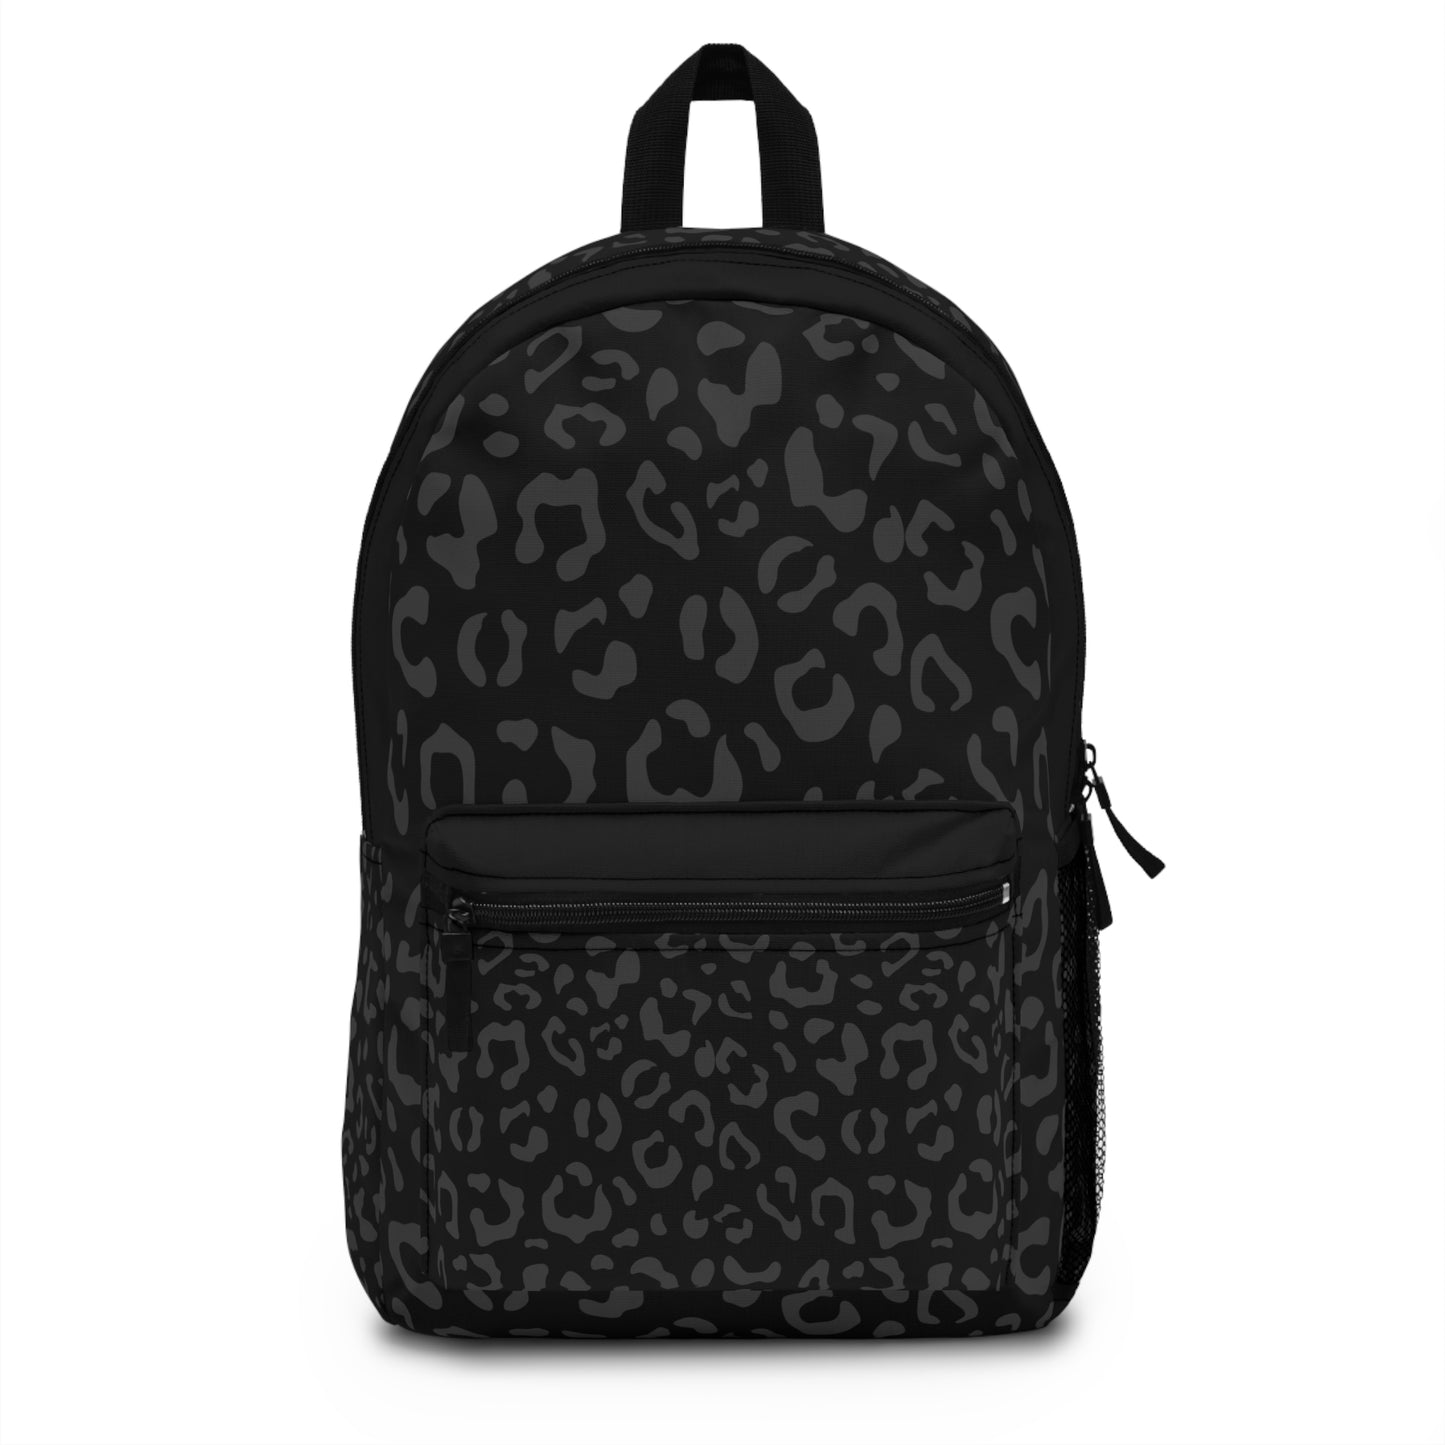 Grey on Black Leopard Backpack